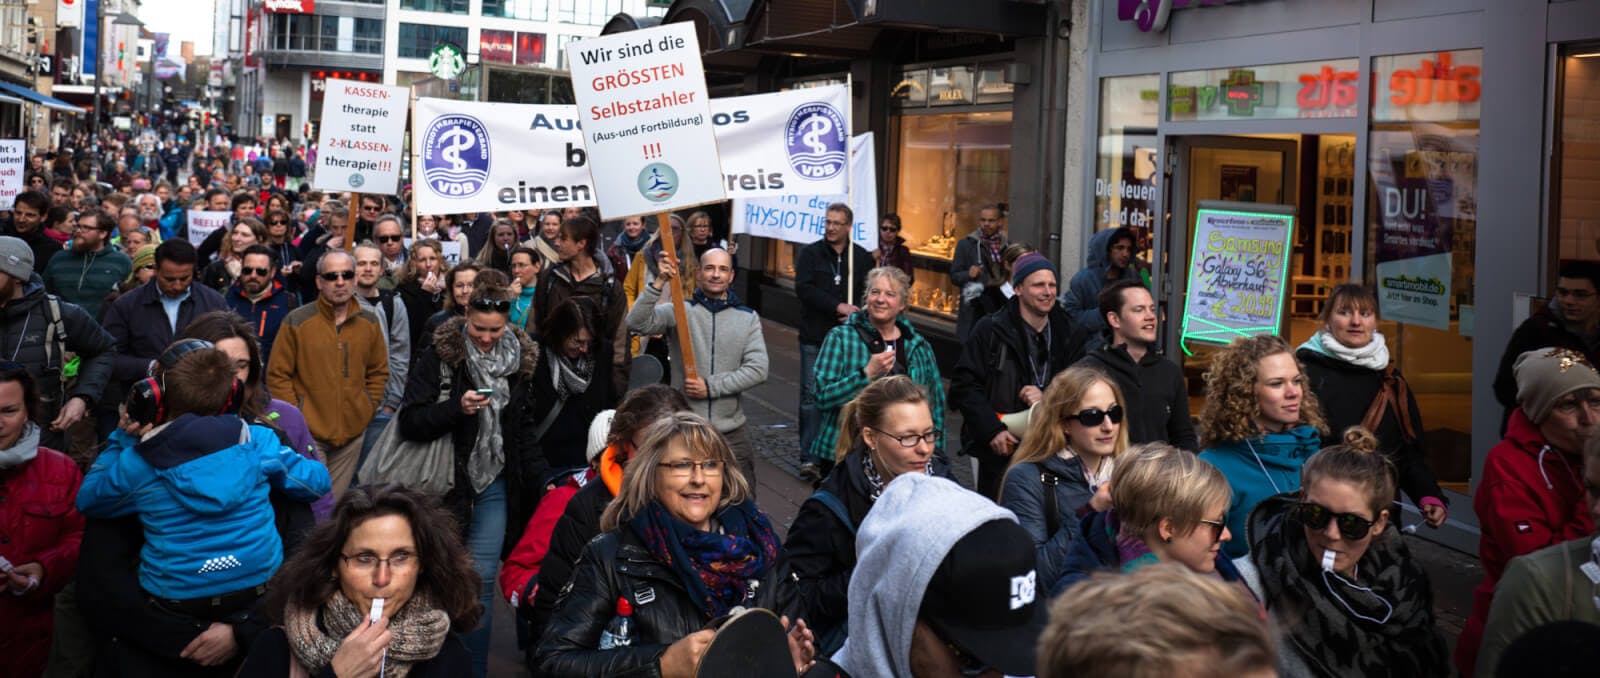 Therapeuten-Demonstration in Kiel macht auf Probleme der Branche aufmerksam